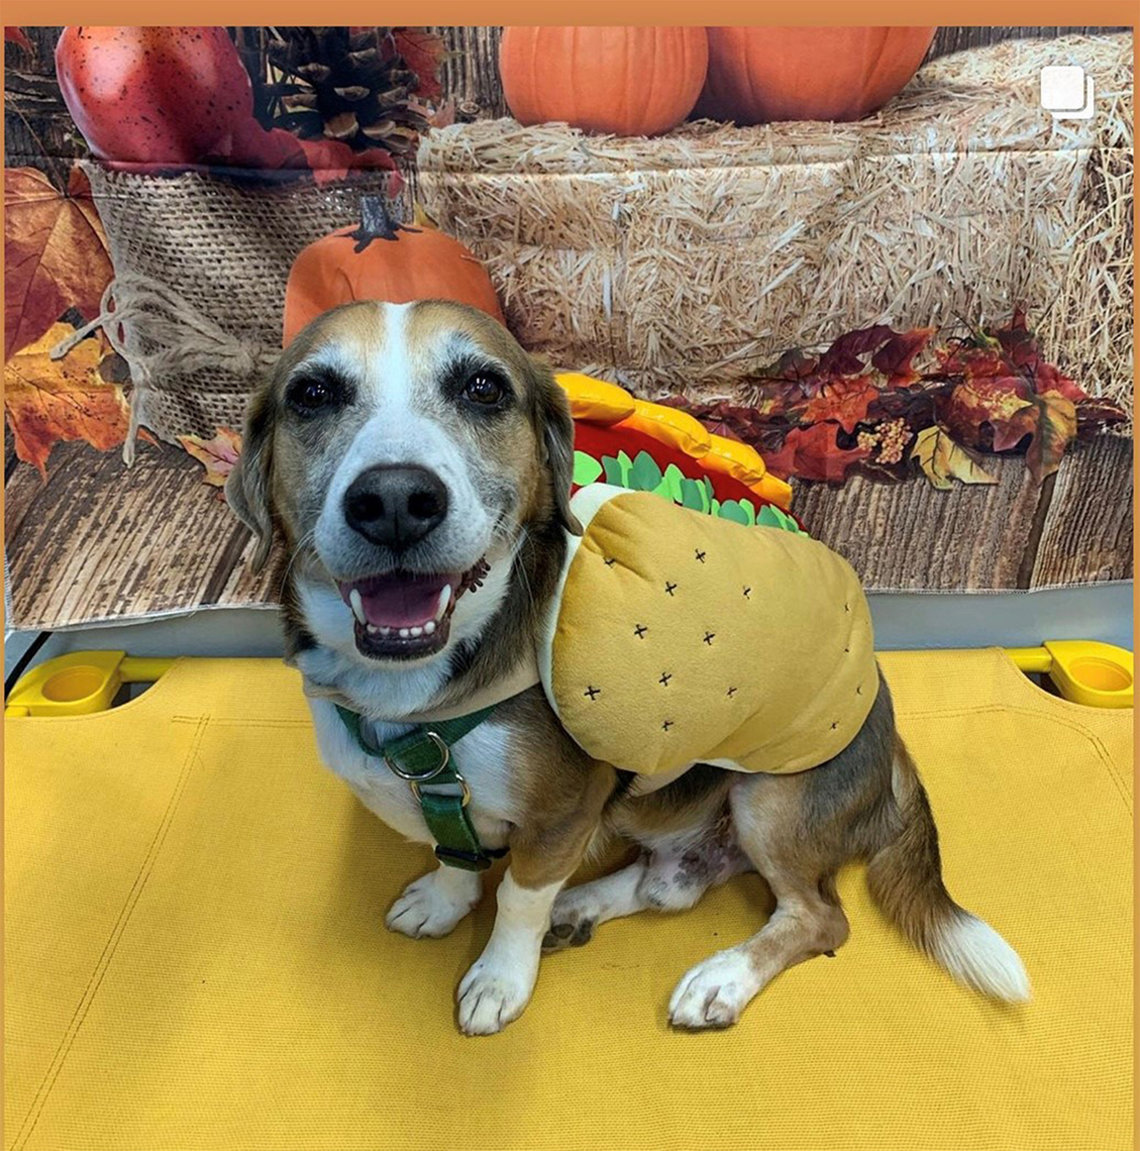 A beagle wears hot dog with bun costume.